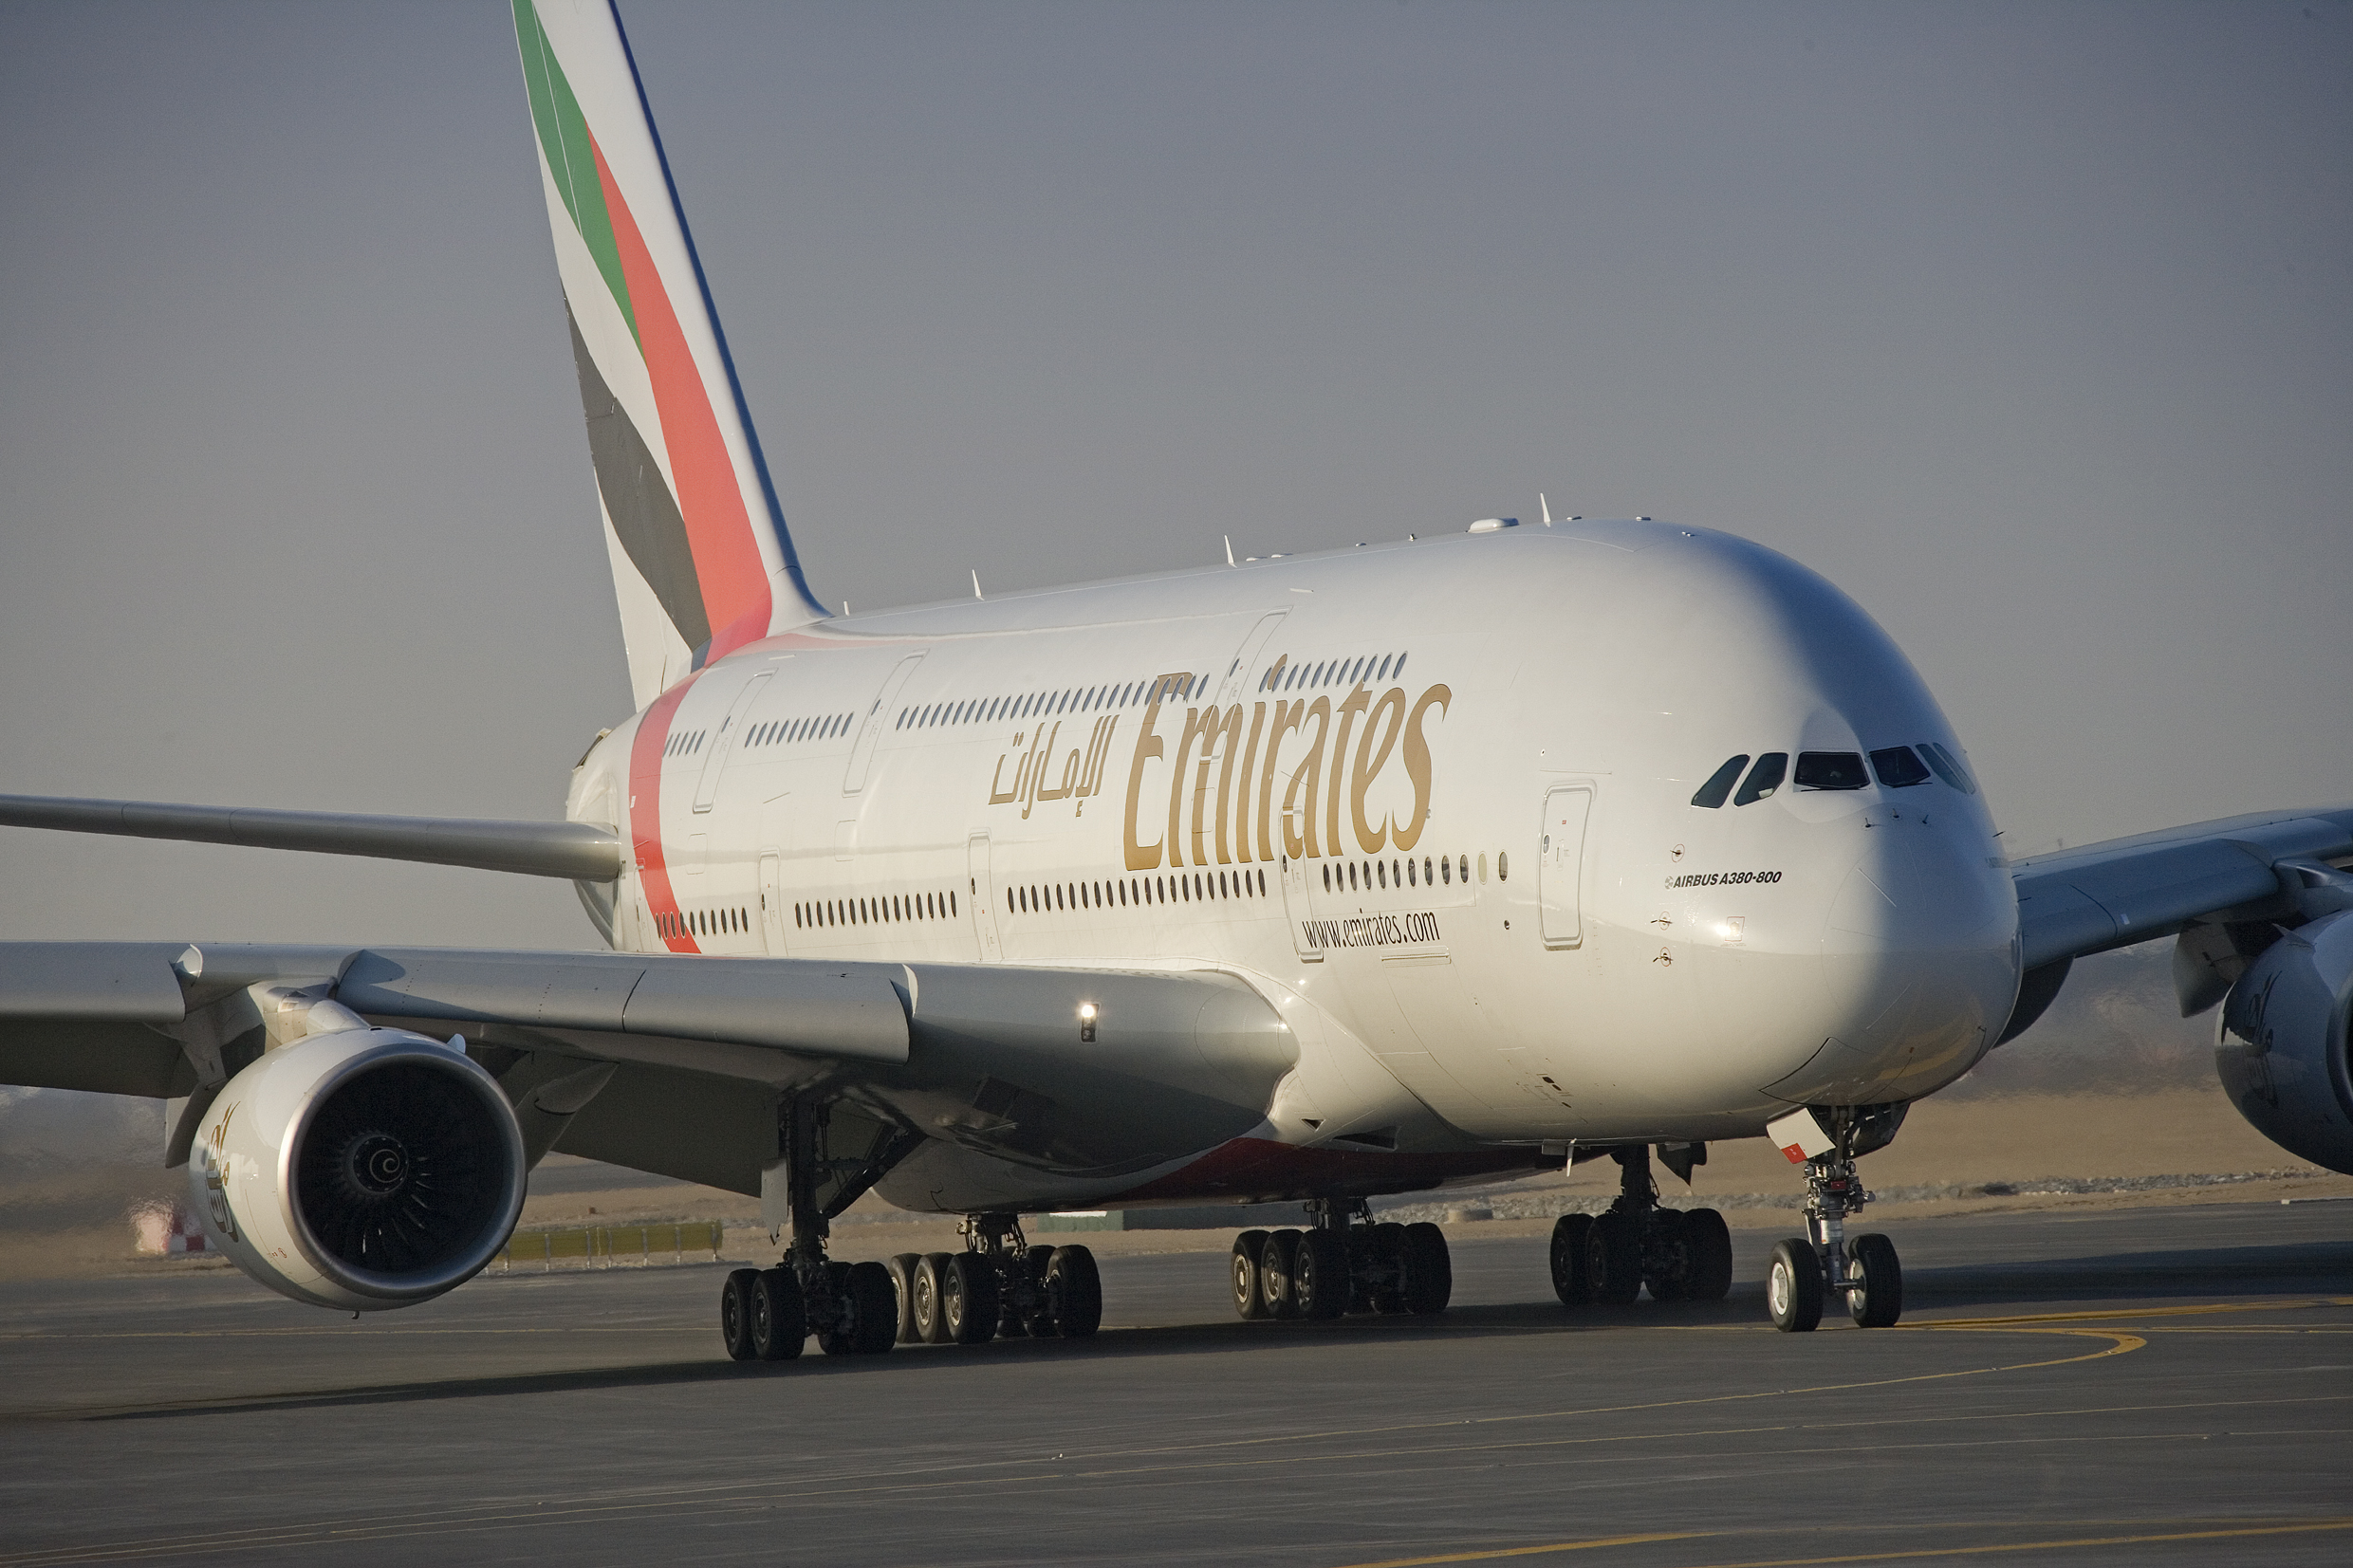 Az eddig átadott 111 példányból az Emirates használja a legtöbbet, 35 gépet